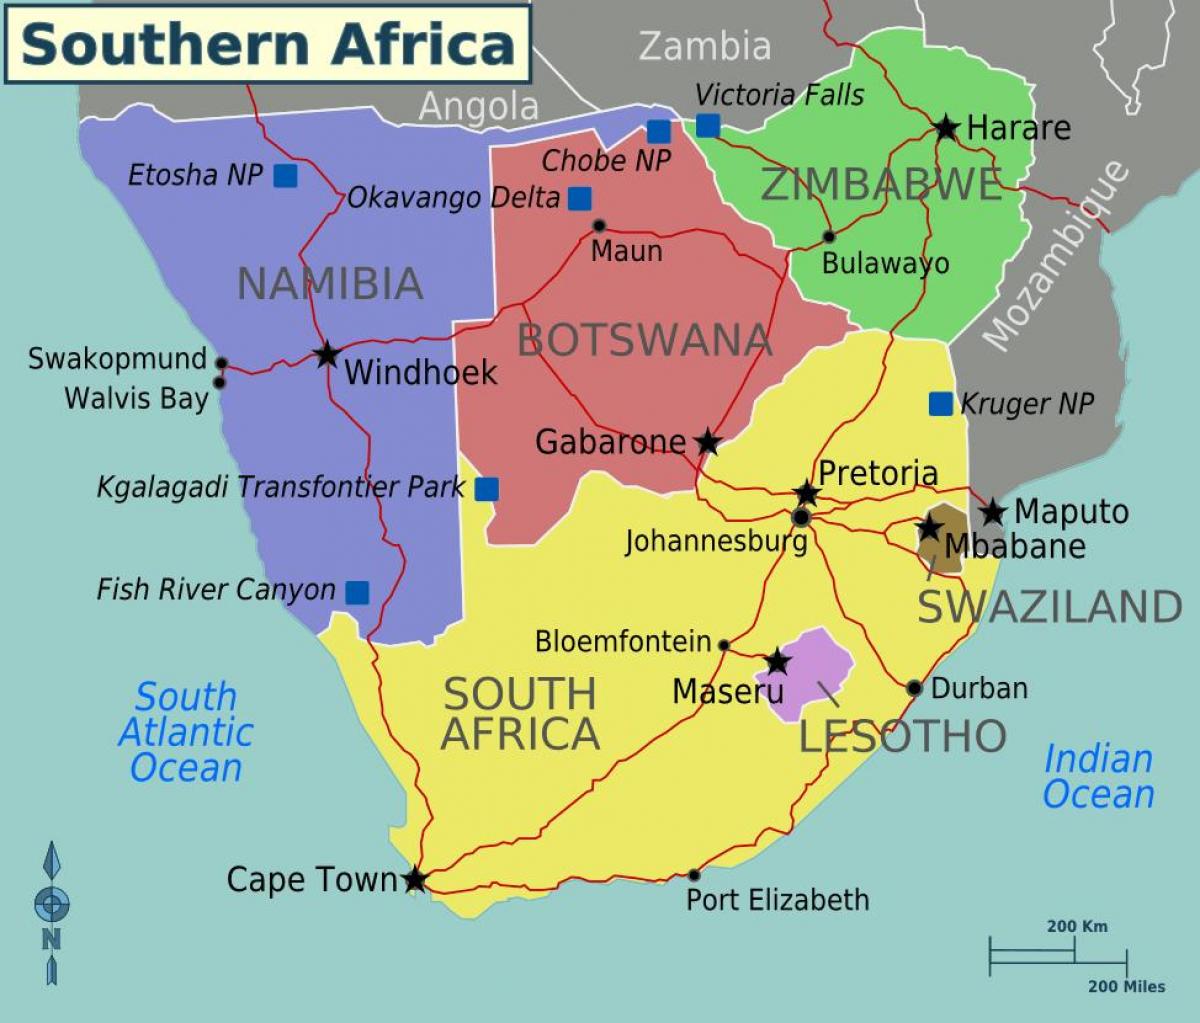 Peta dari maputo Swaziland